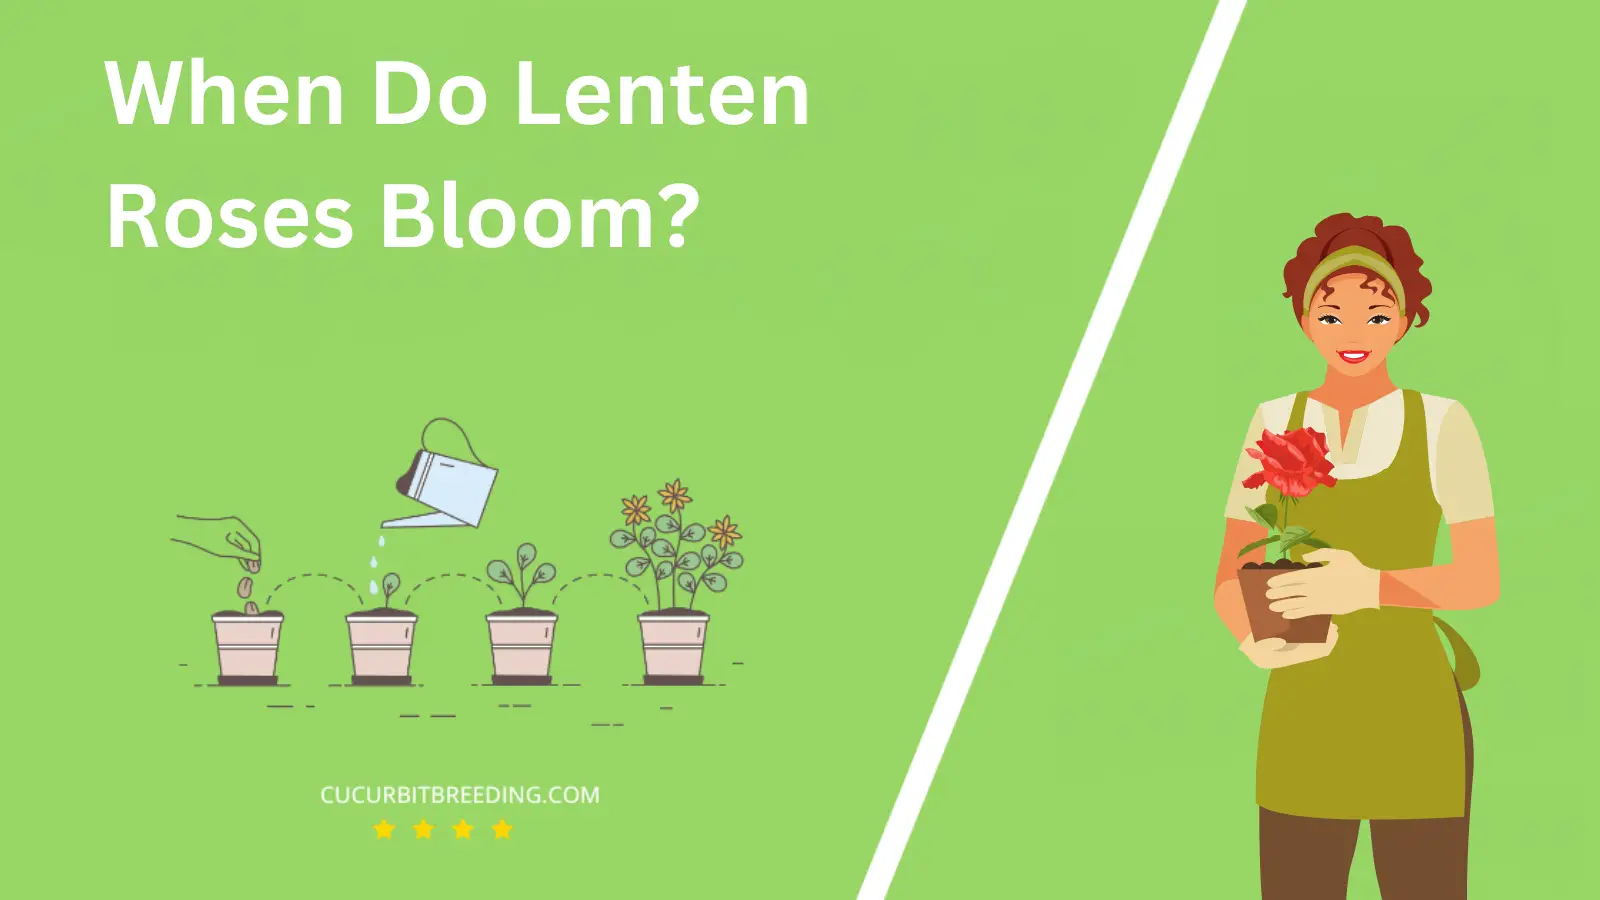 When Do Lenten Roses Bloom?